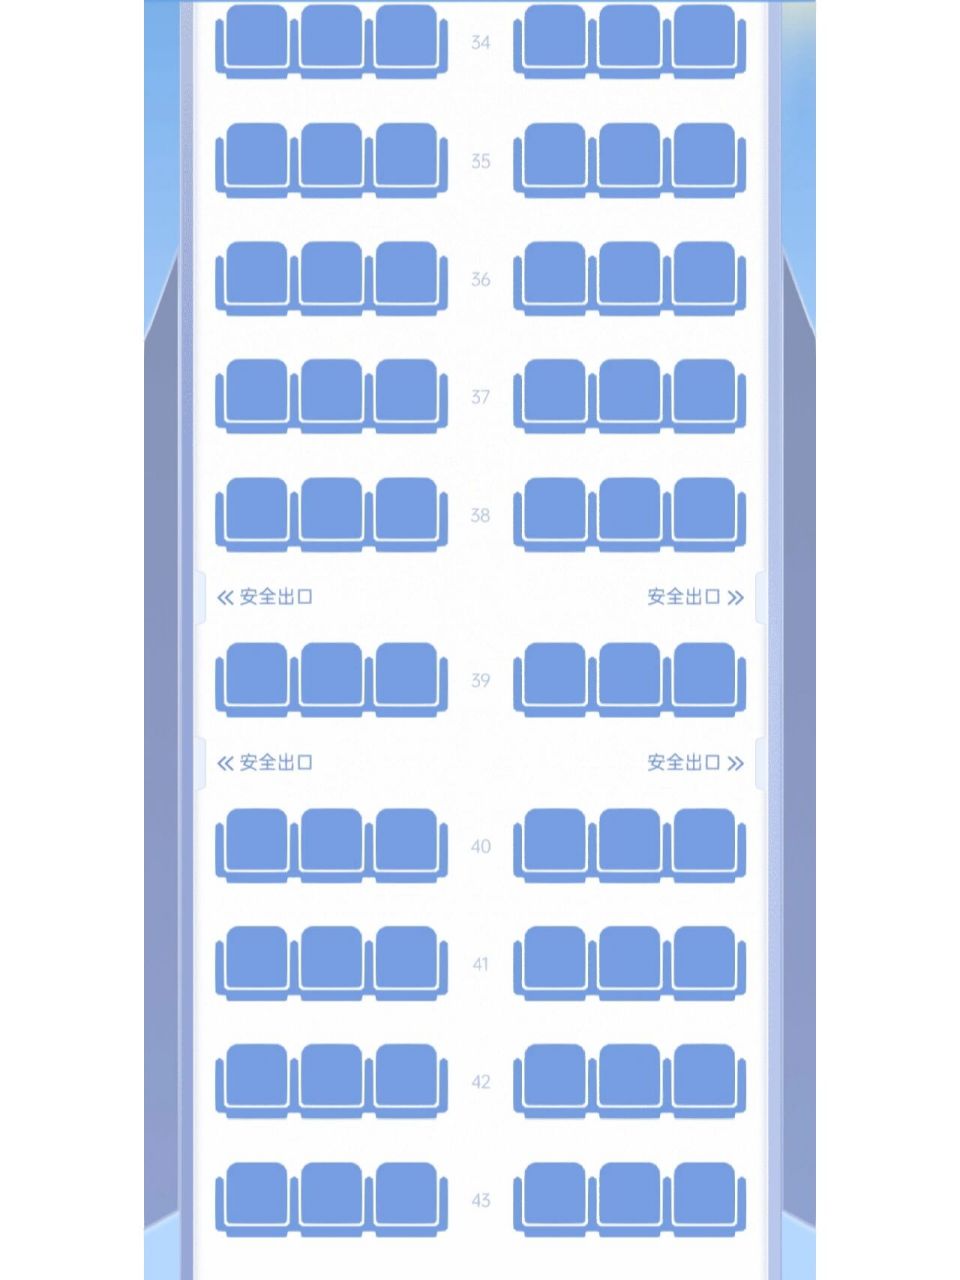 东航mu5775机型座位图图片